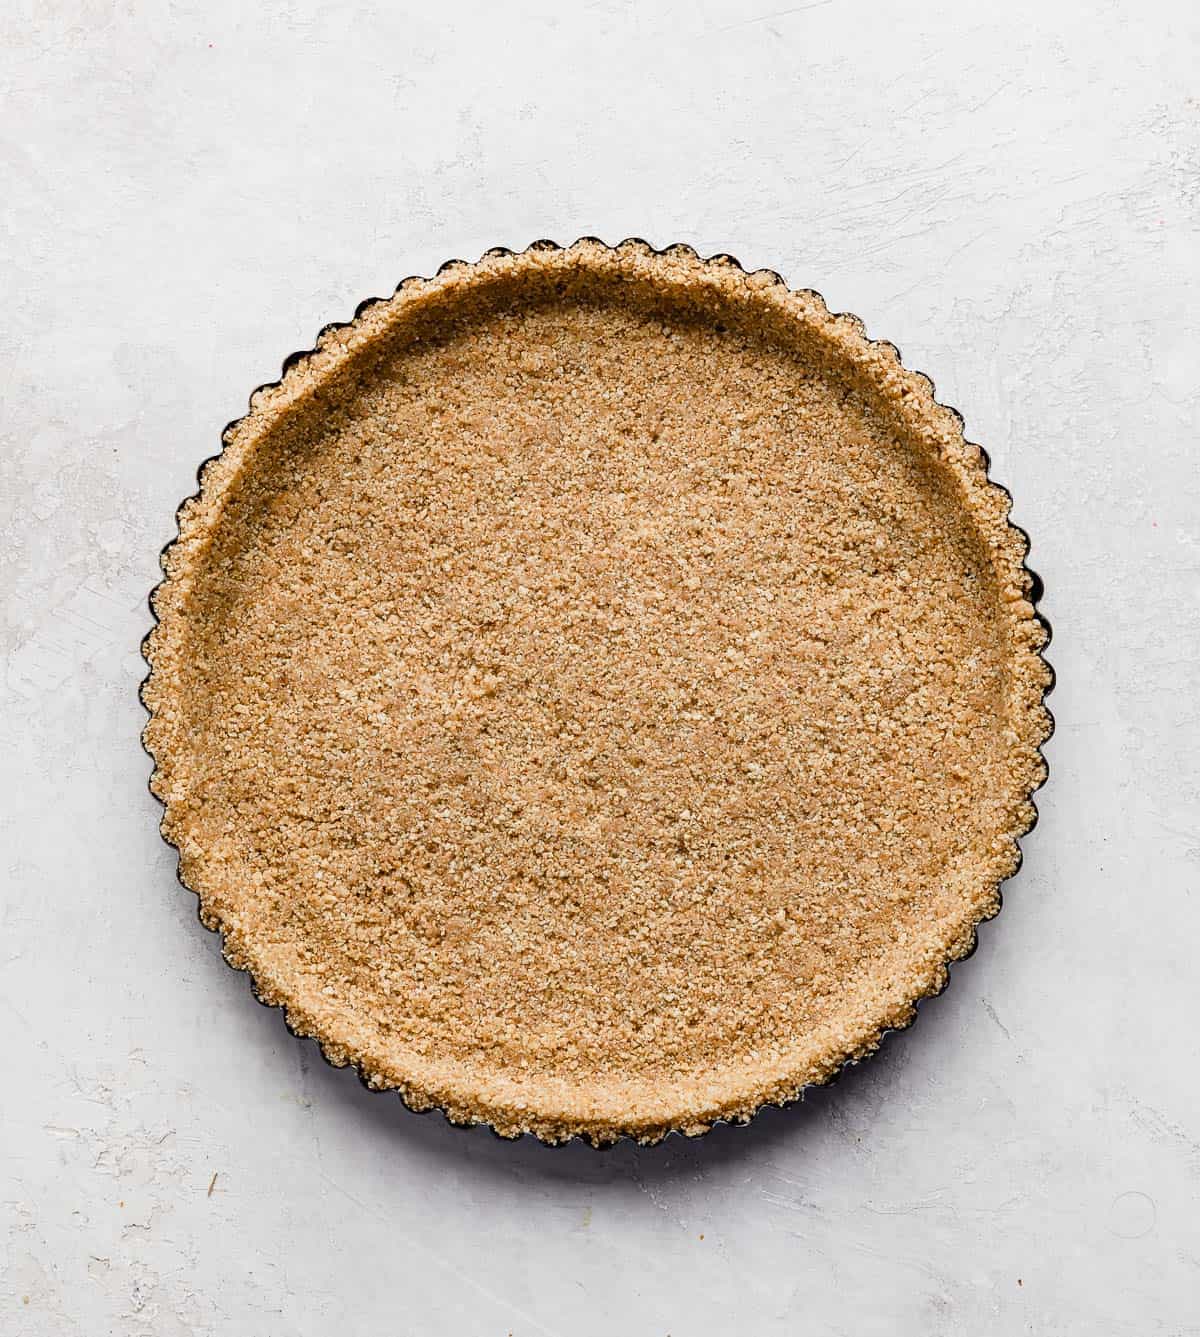 A graham cracker crust in a tart pan.